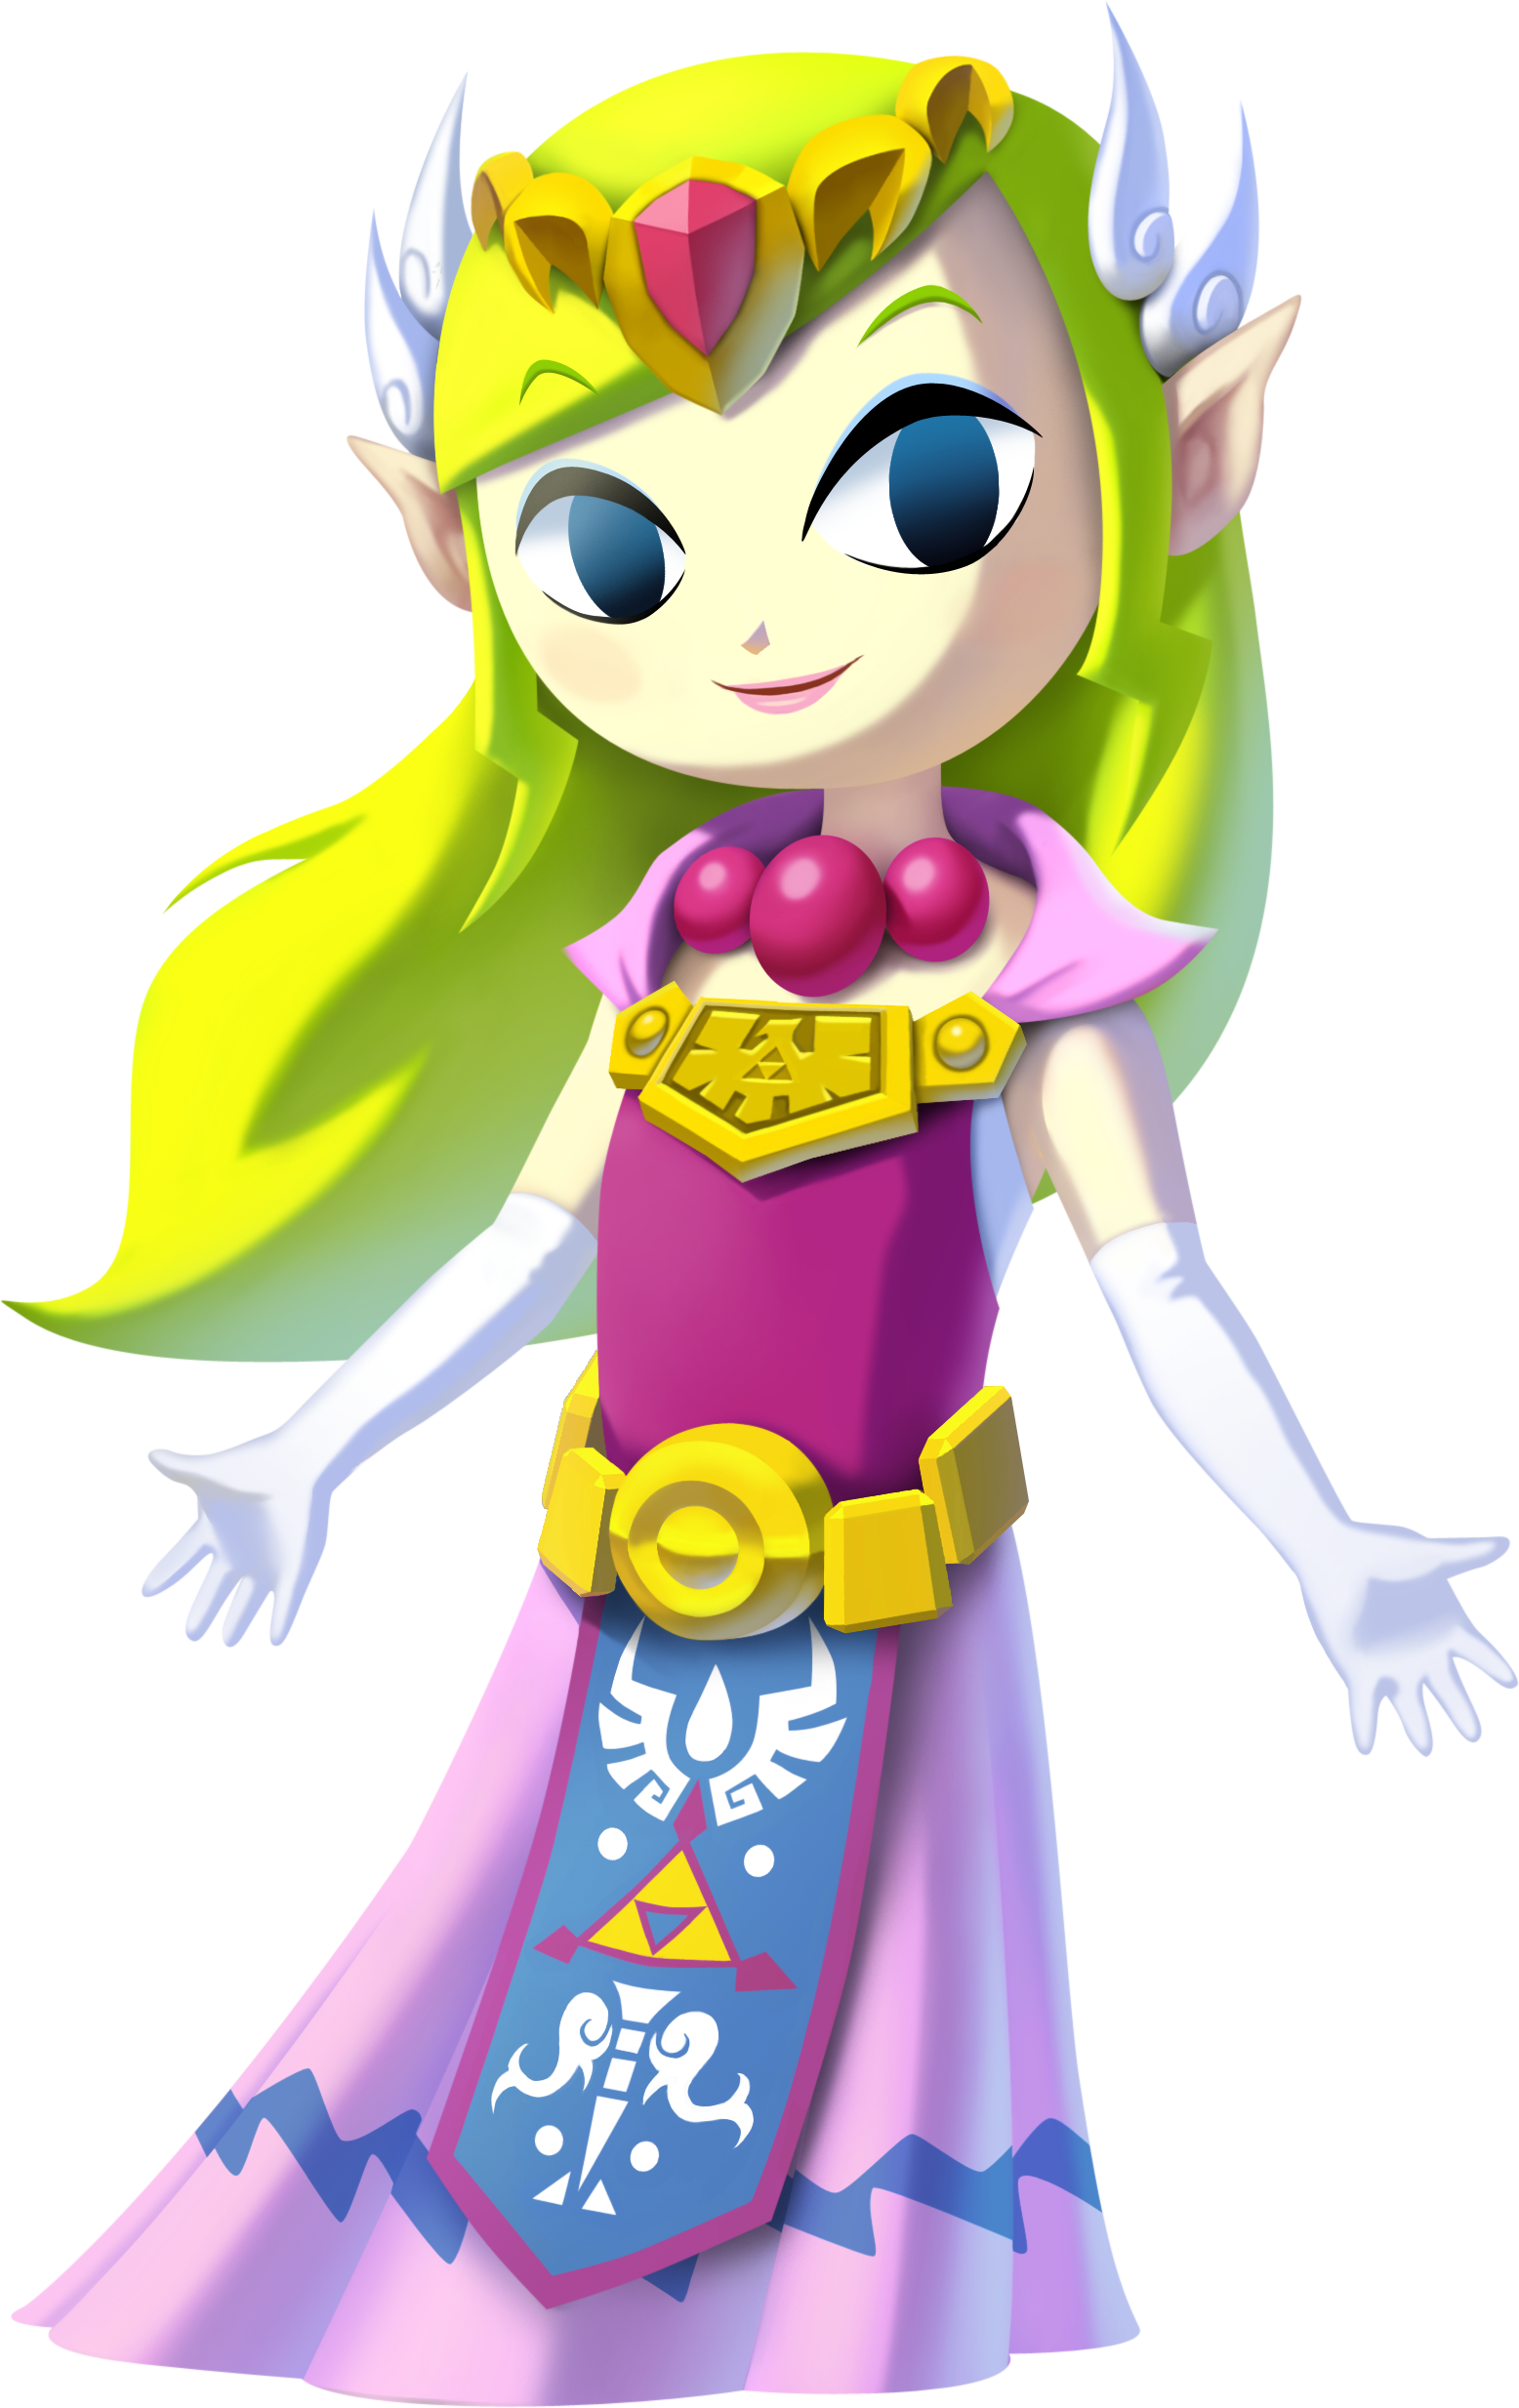 Toon Zelda | Fantendo - Nintendo Fanon Wiki | FANDOM powered by Wikia